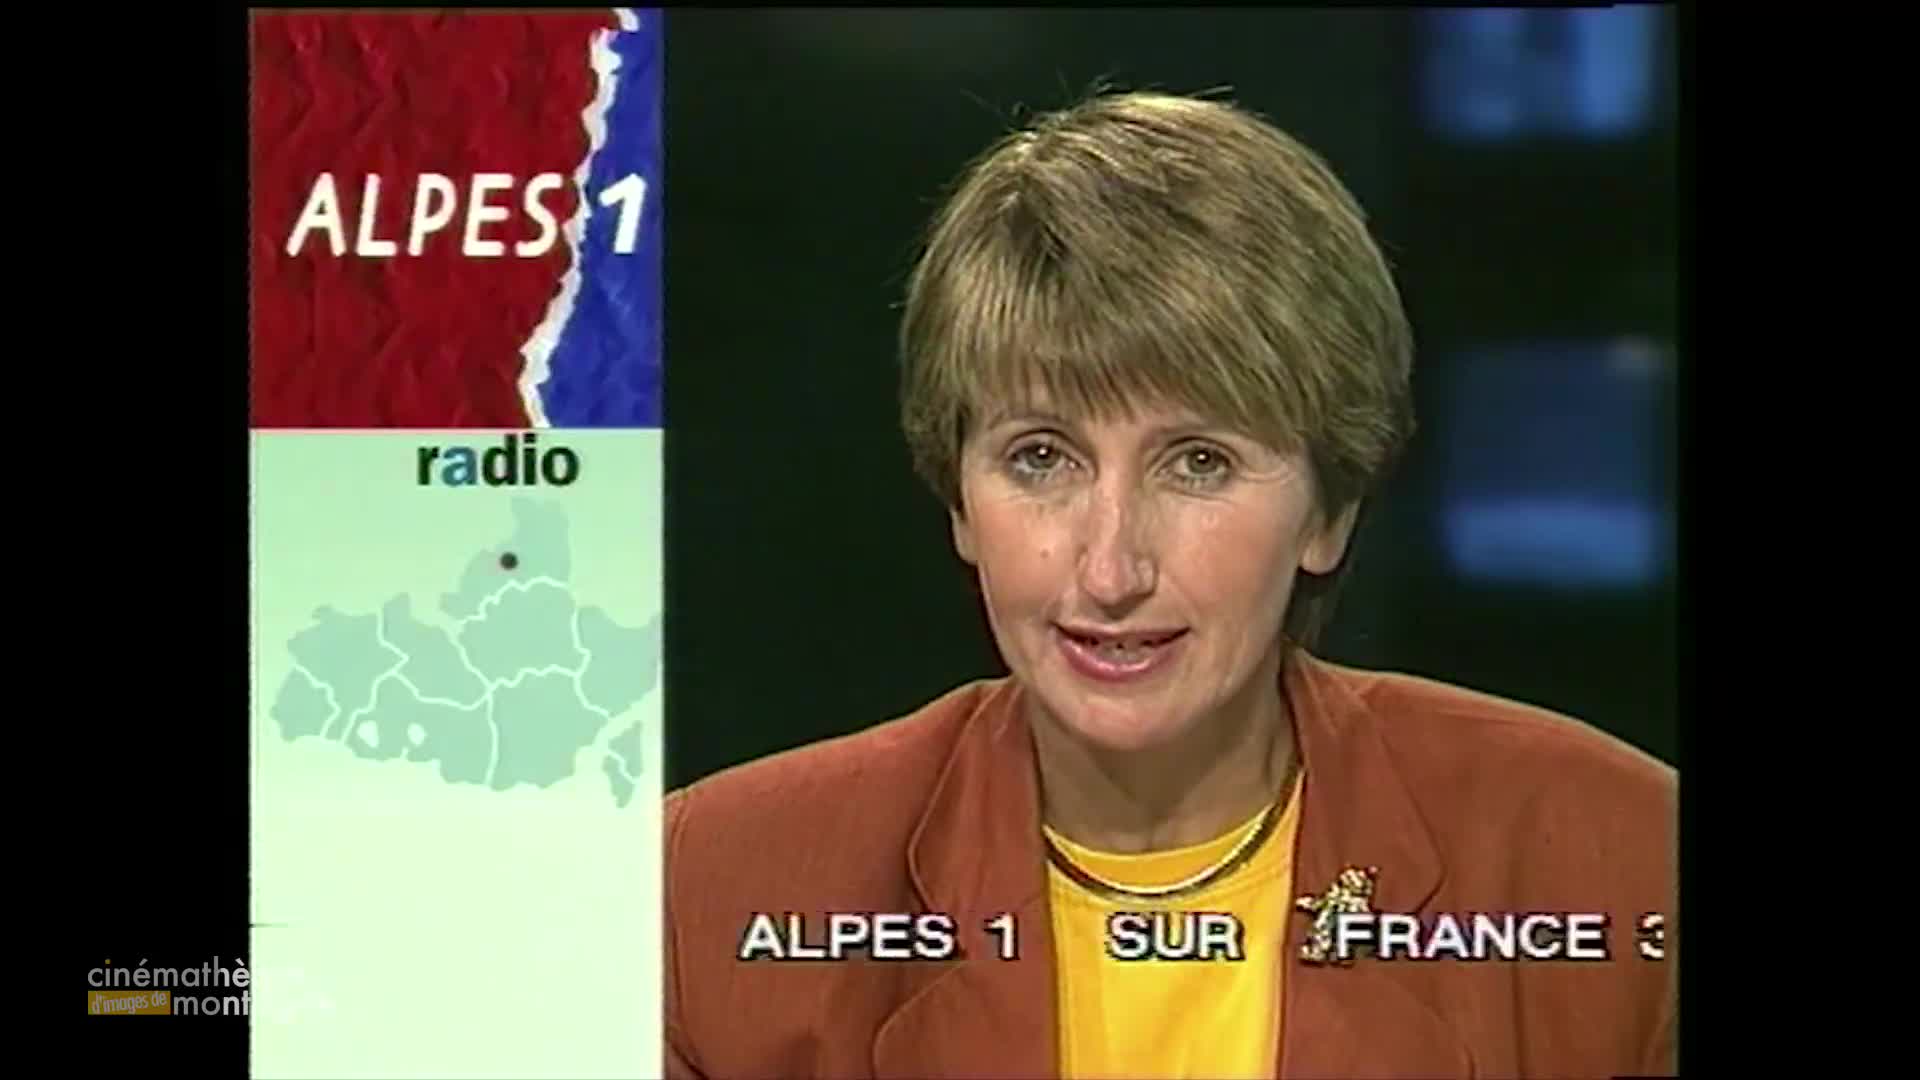 Alpes 1 la radio